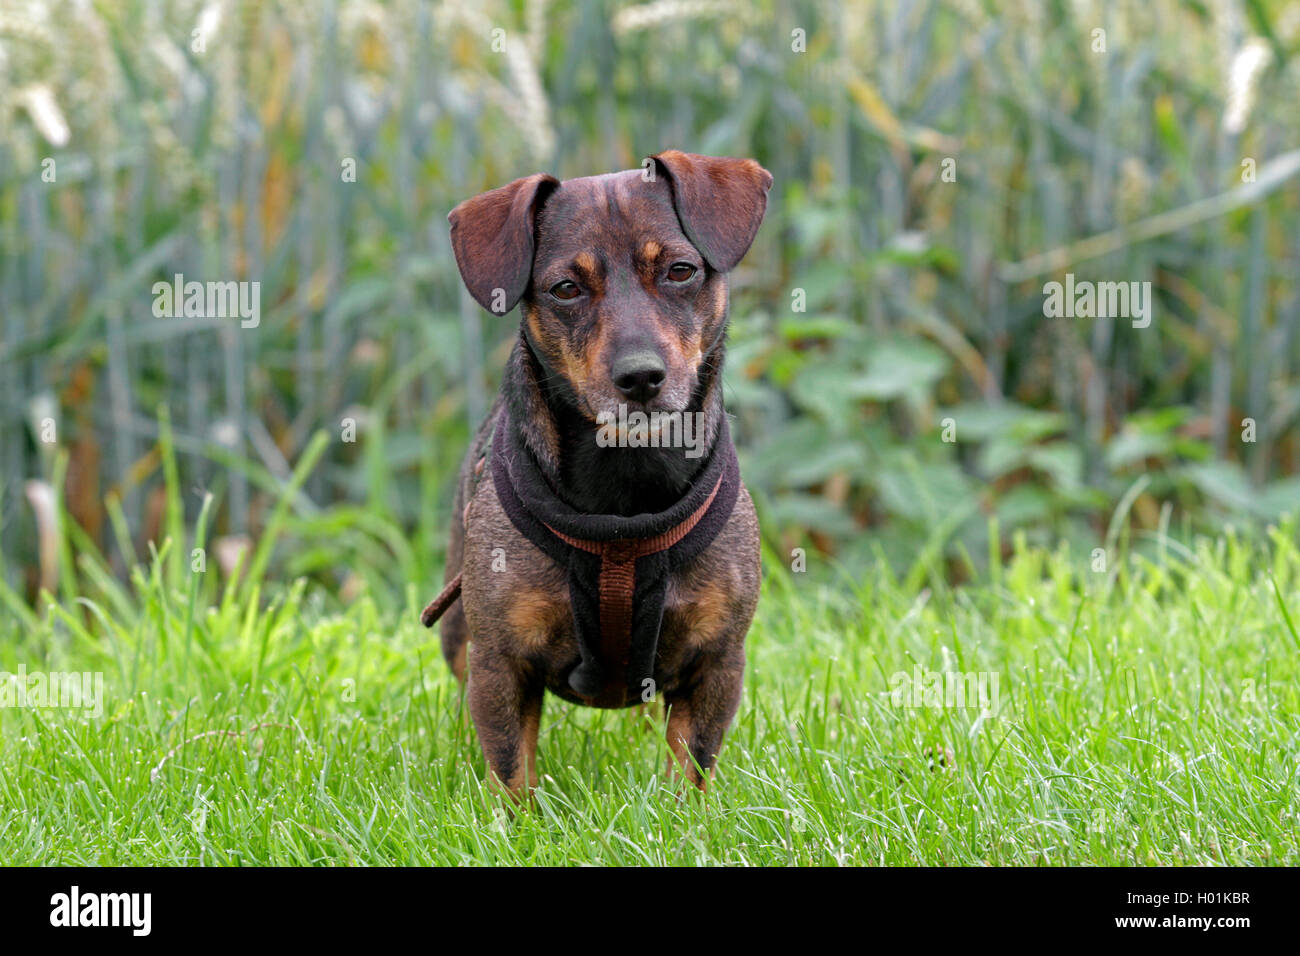 Teckel perro de raza mixta, macho perro de pie en una pradera, Alemania Foto de stock